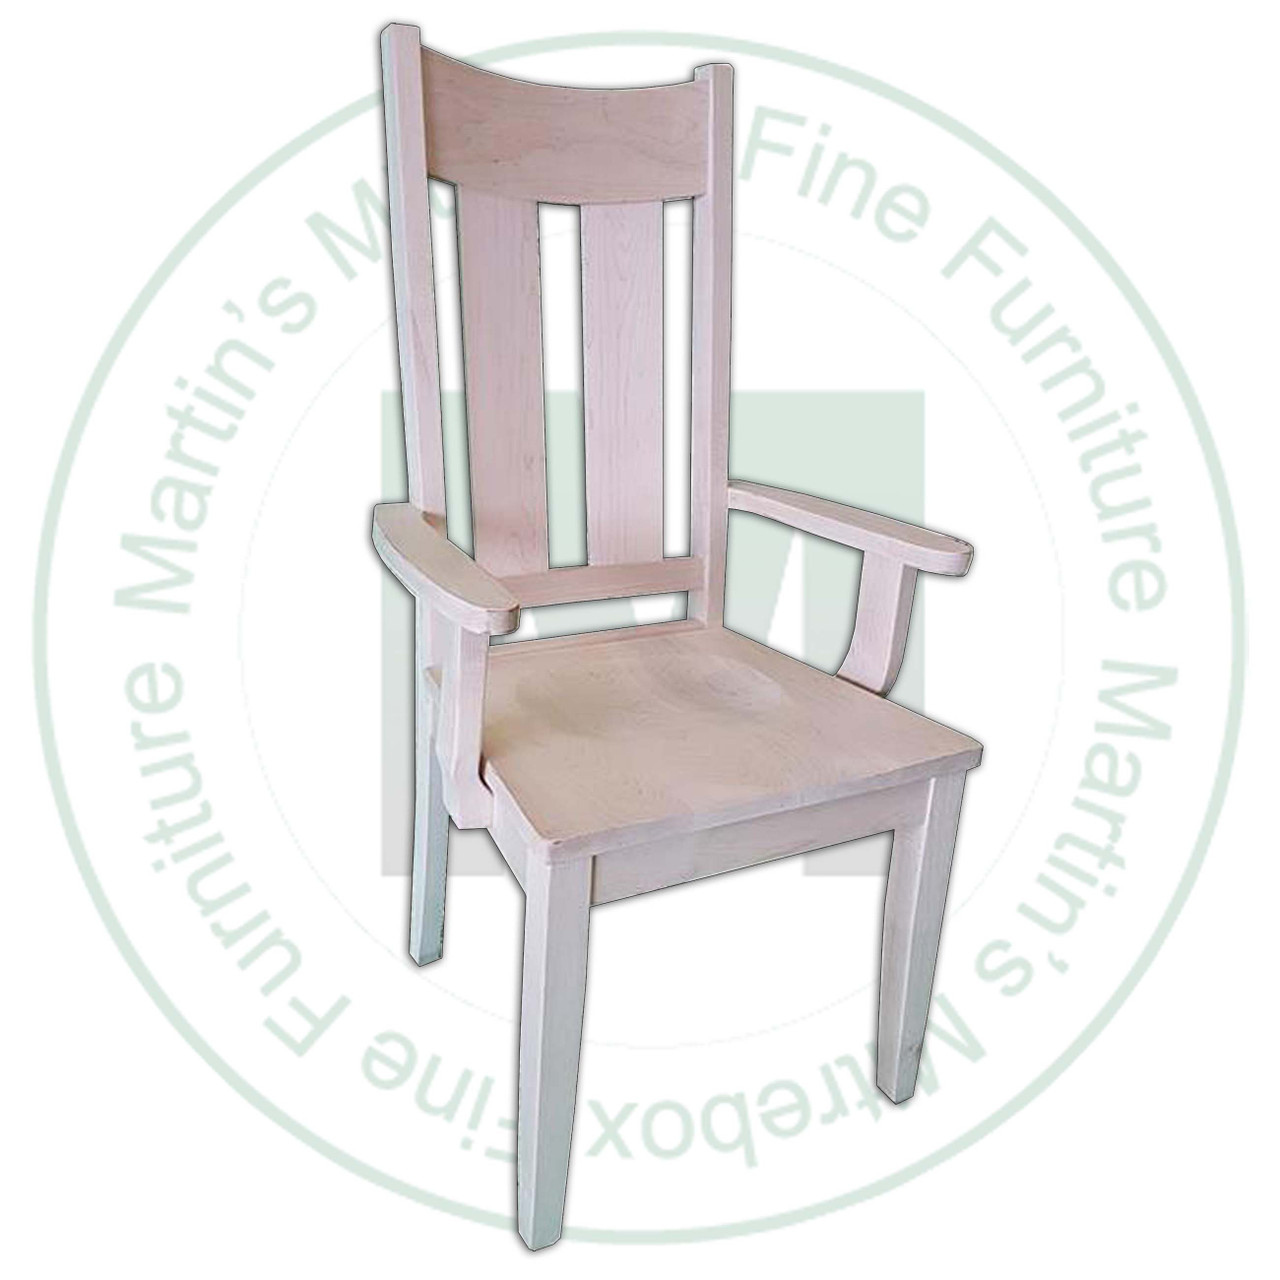 Oak Aspen Arm Chair Has Wood Seat